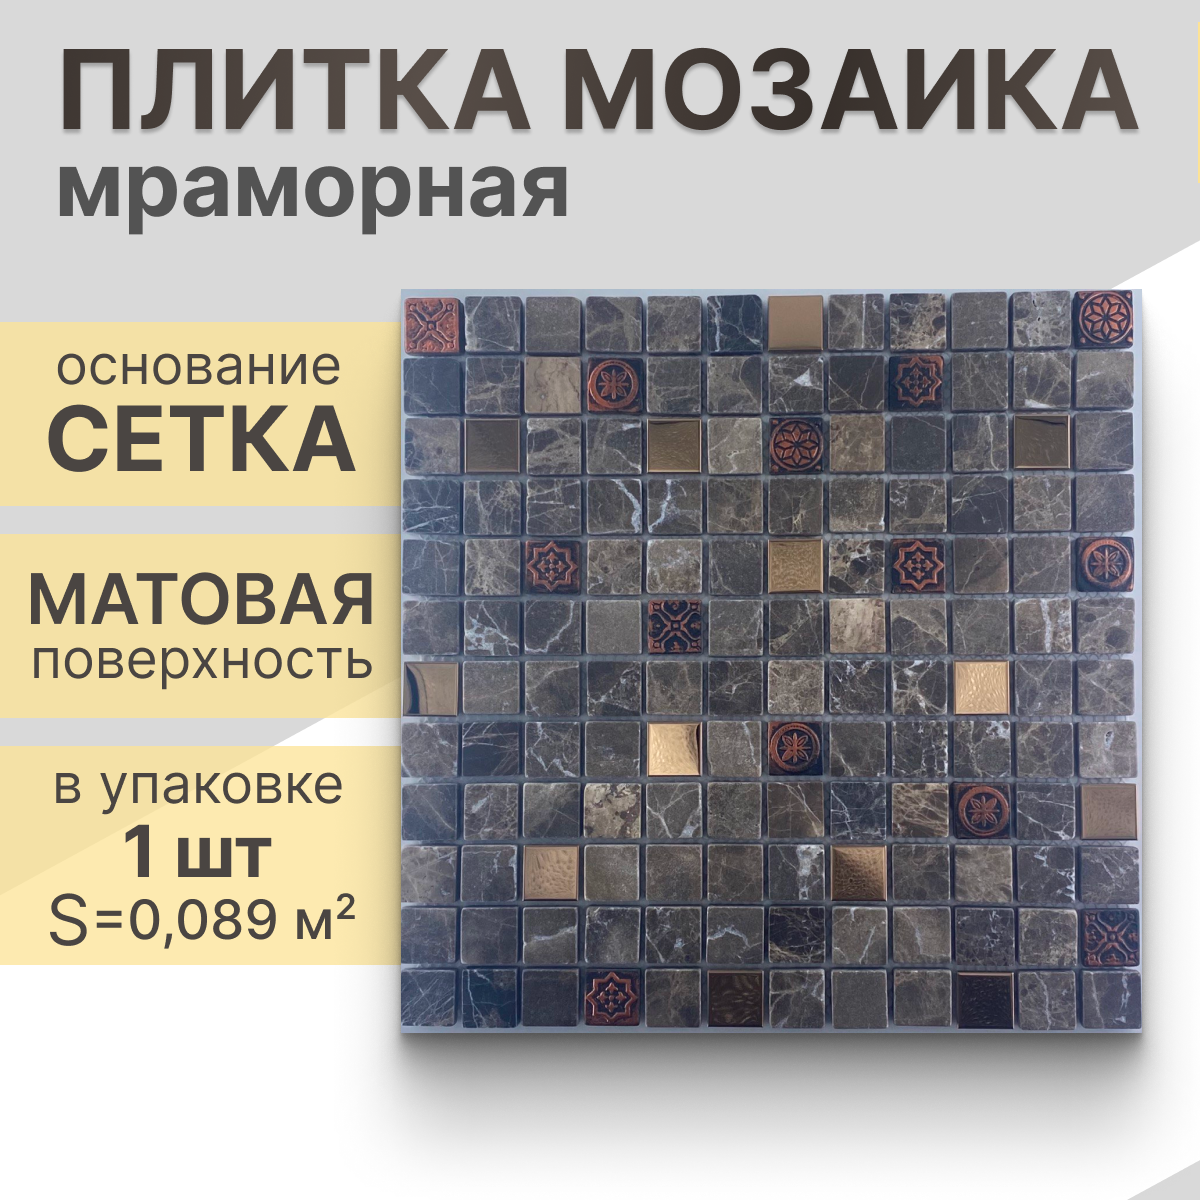 Мозаика (мрамор, металл, керамика) NS mosaic K-716 29,8x29,8 см 1 шт (0,089 м²)